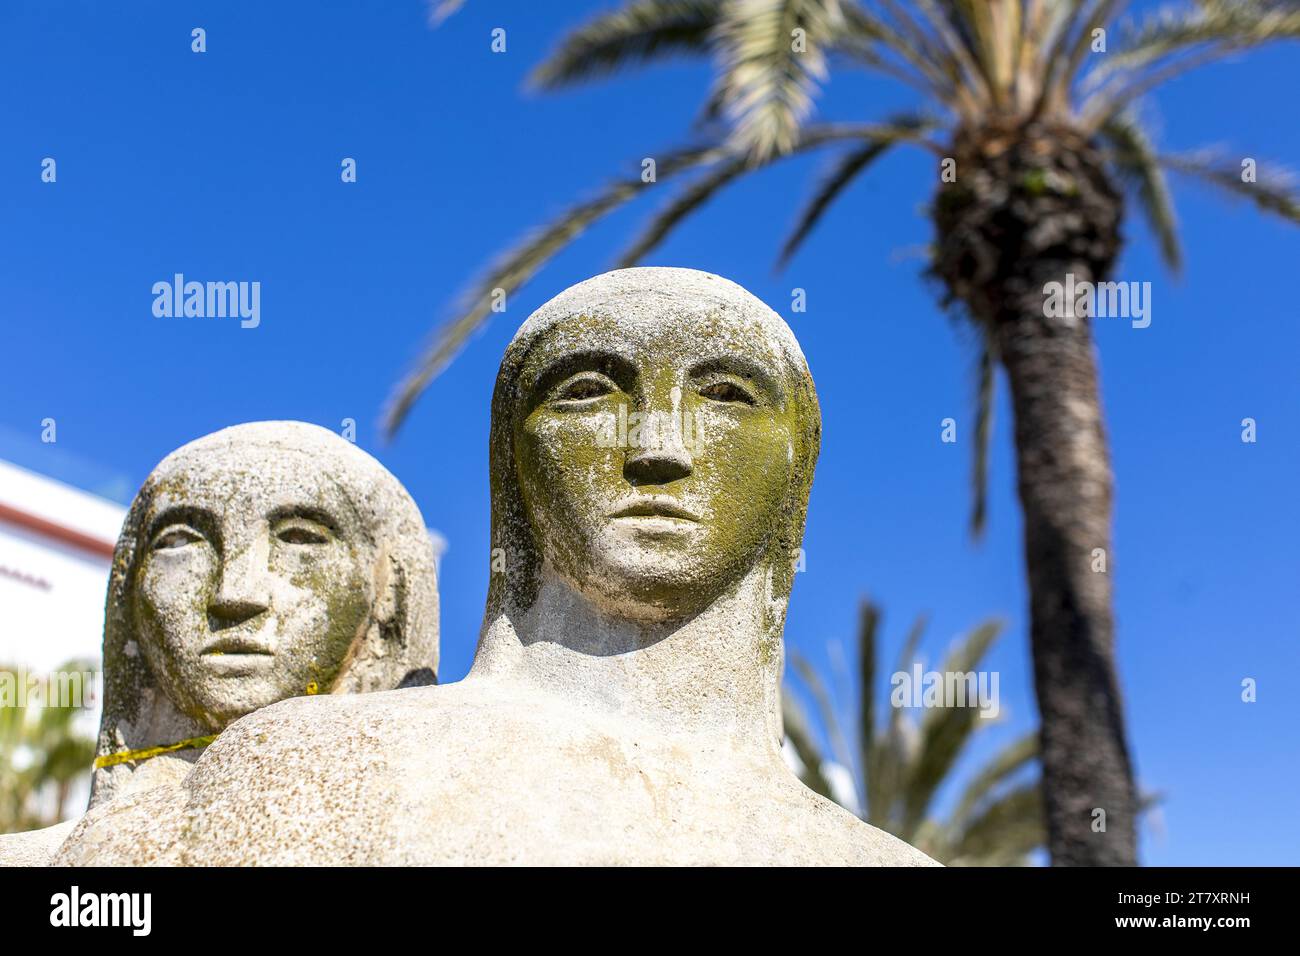 Dettaglio, Statua delle tre donne, Sitges, Catalogna, Spagna, Europa Foto Stock